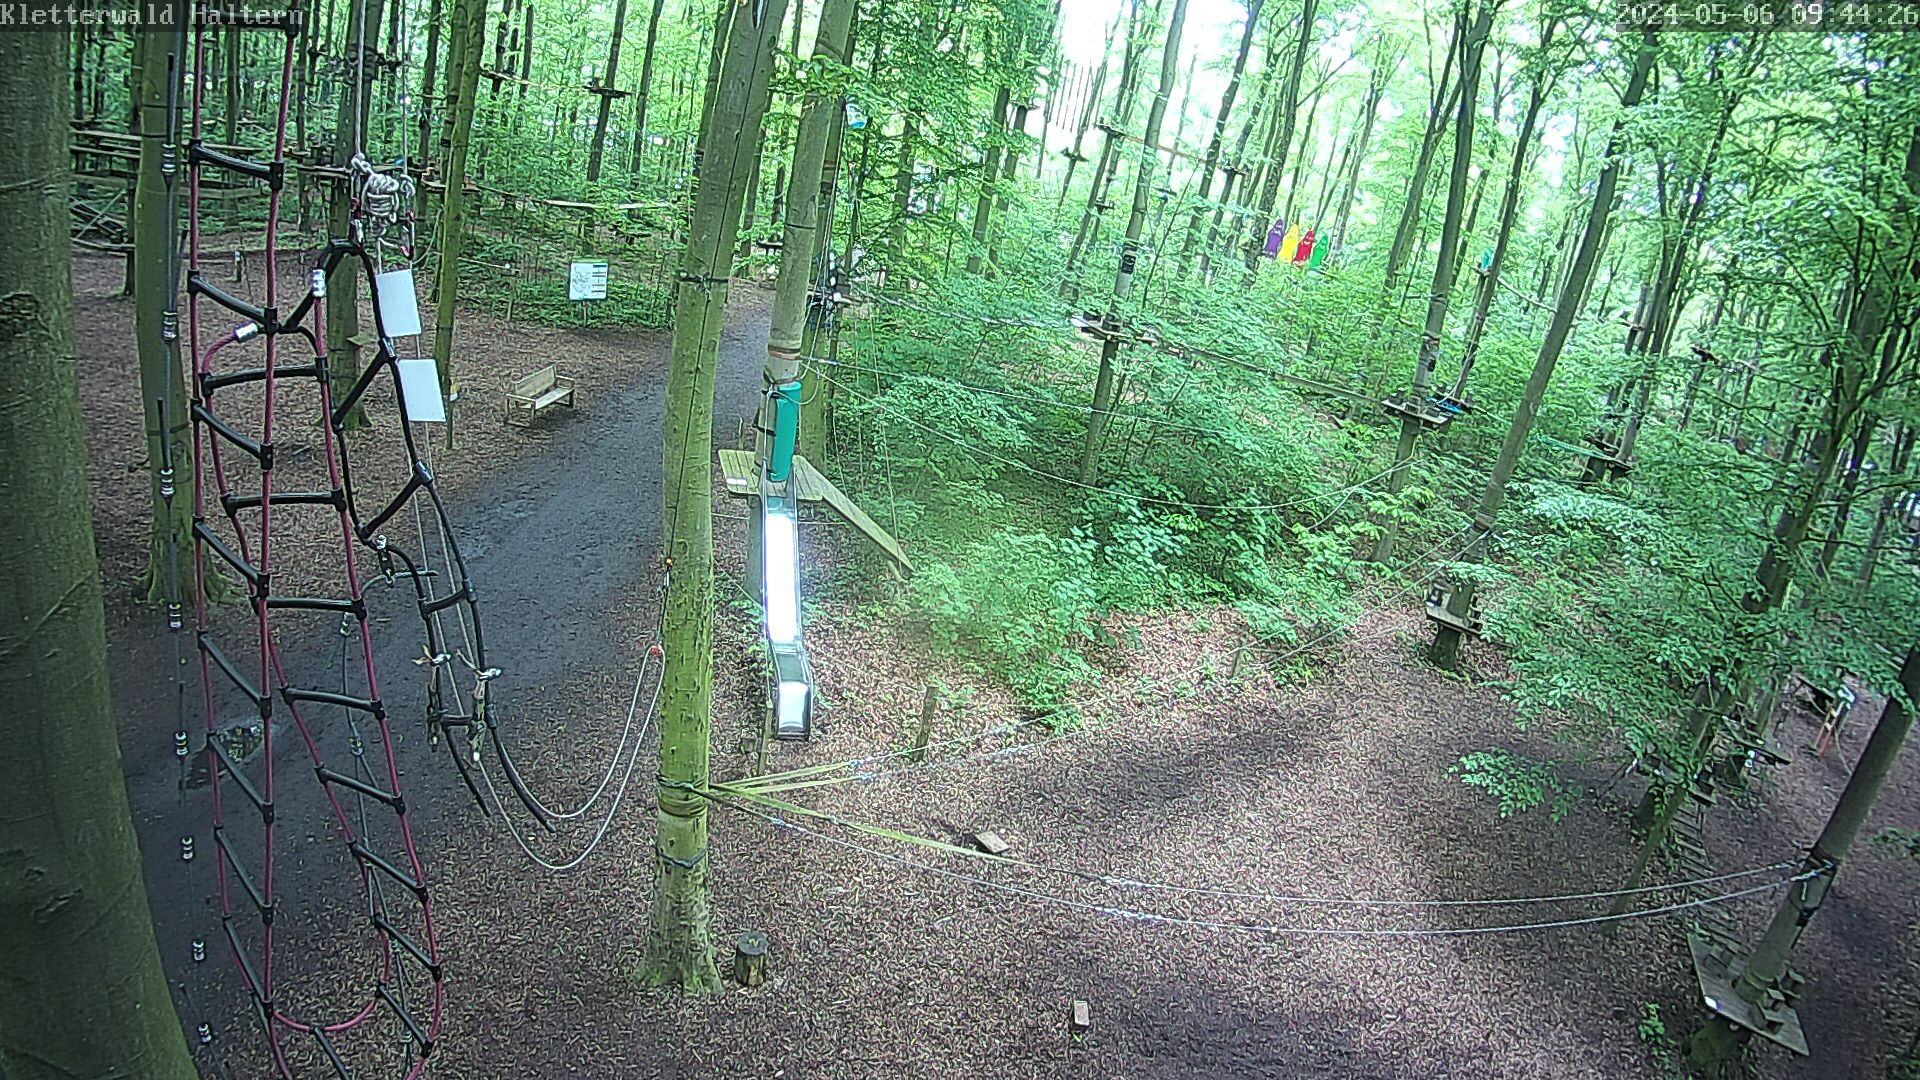 WebCam Kletterwald Haltern